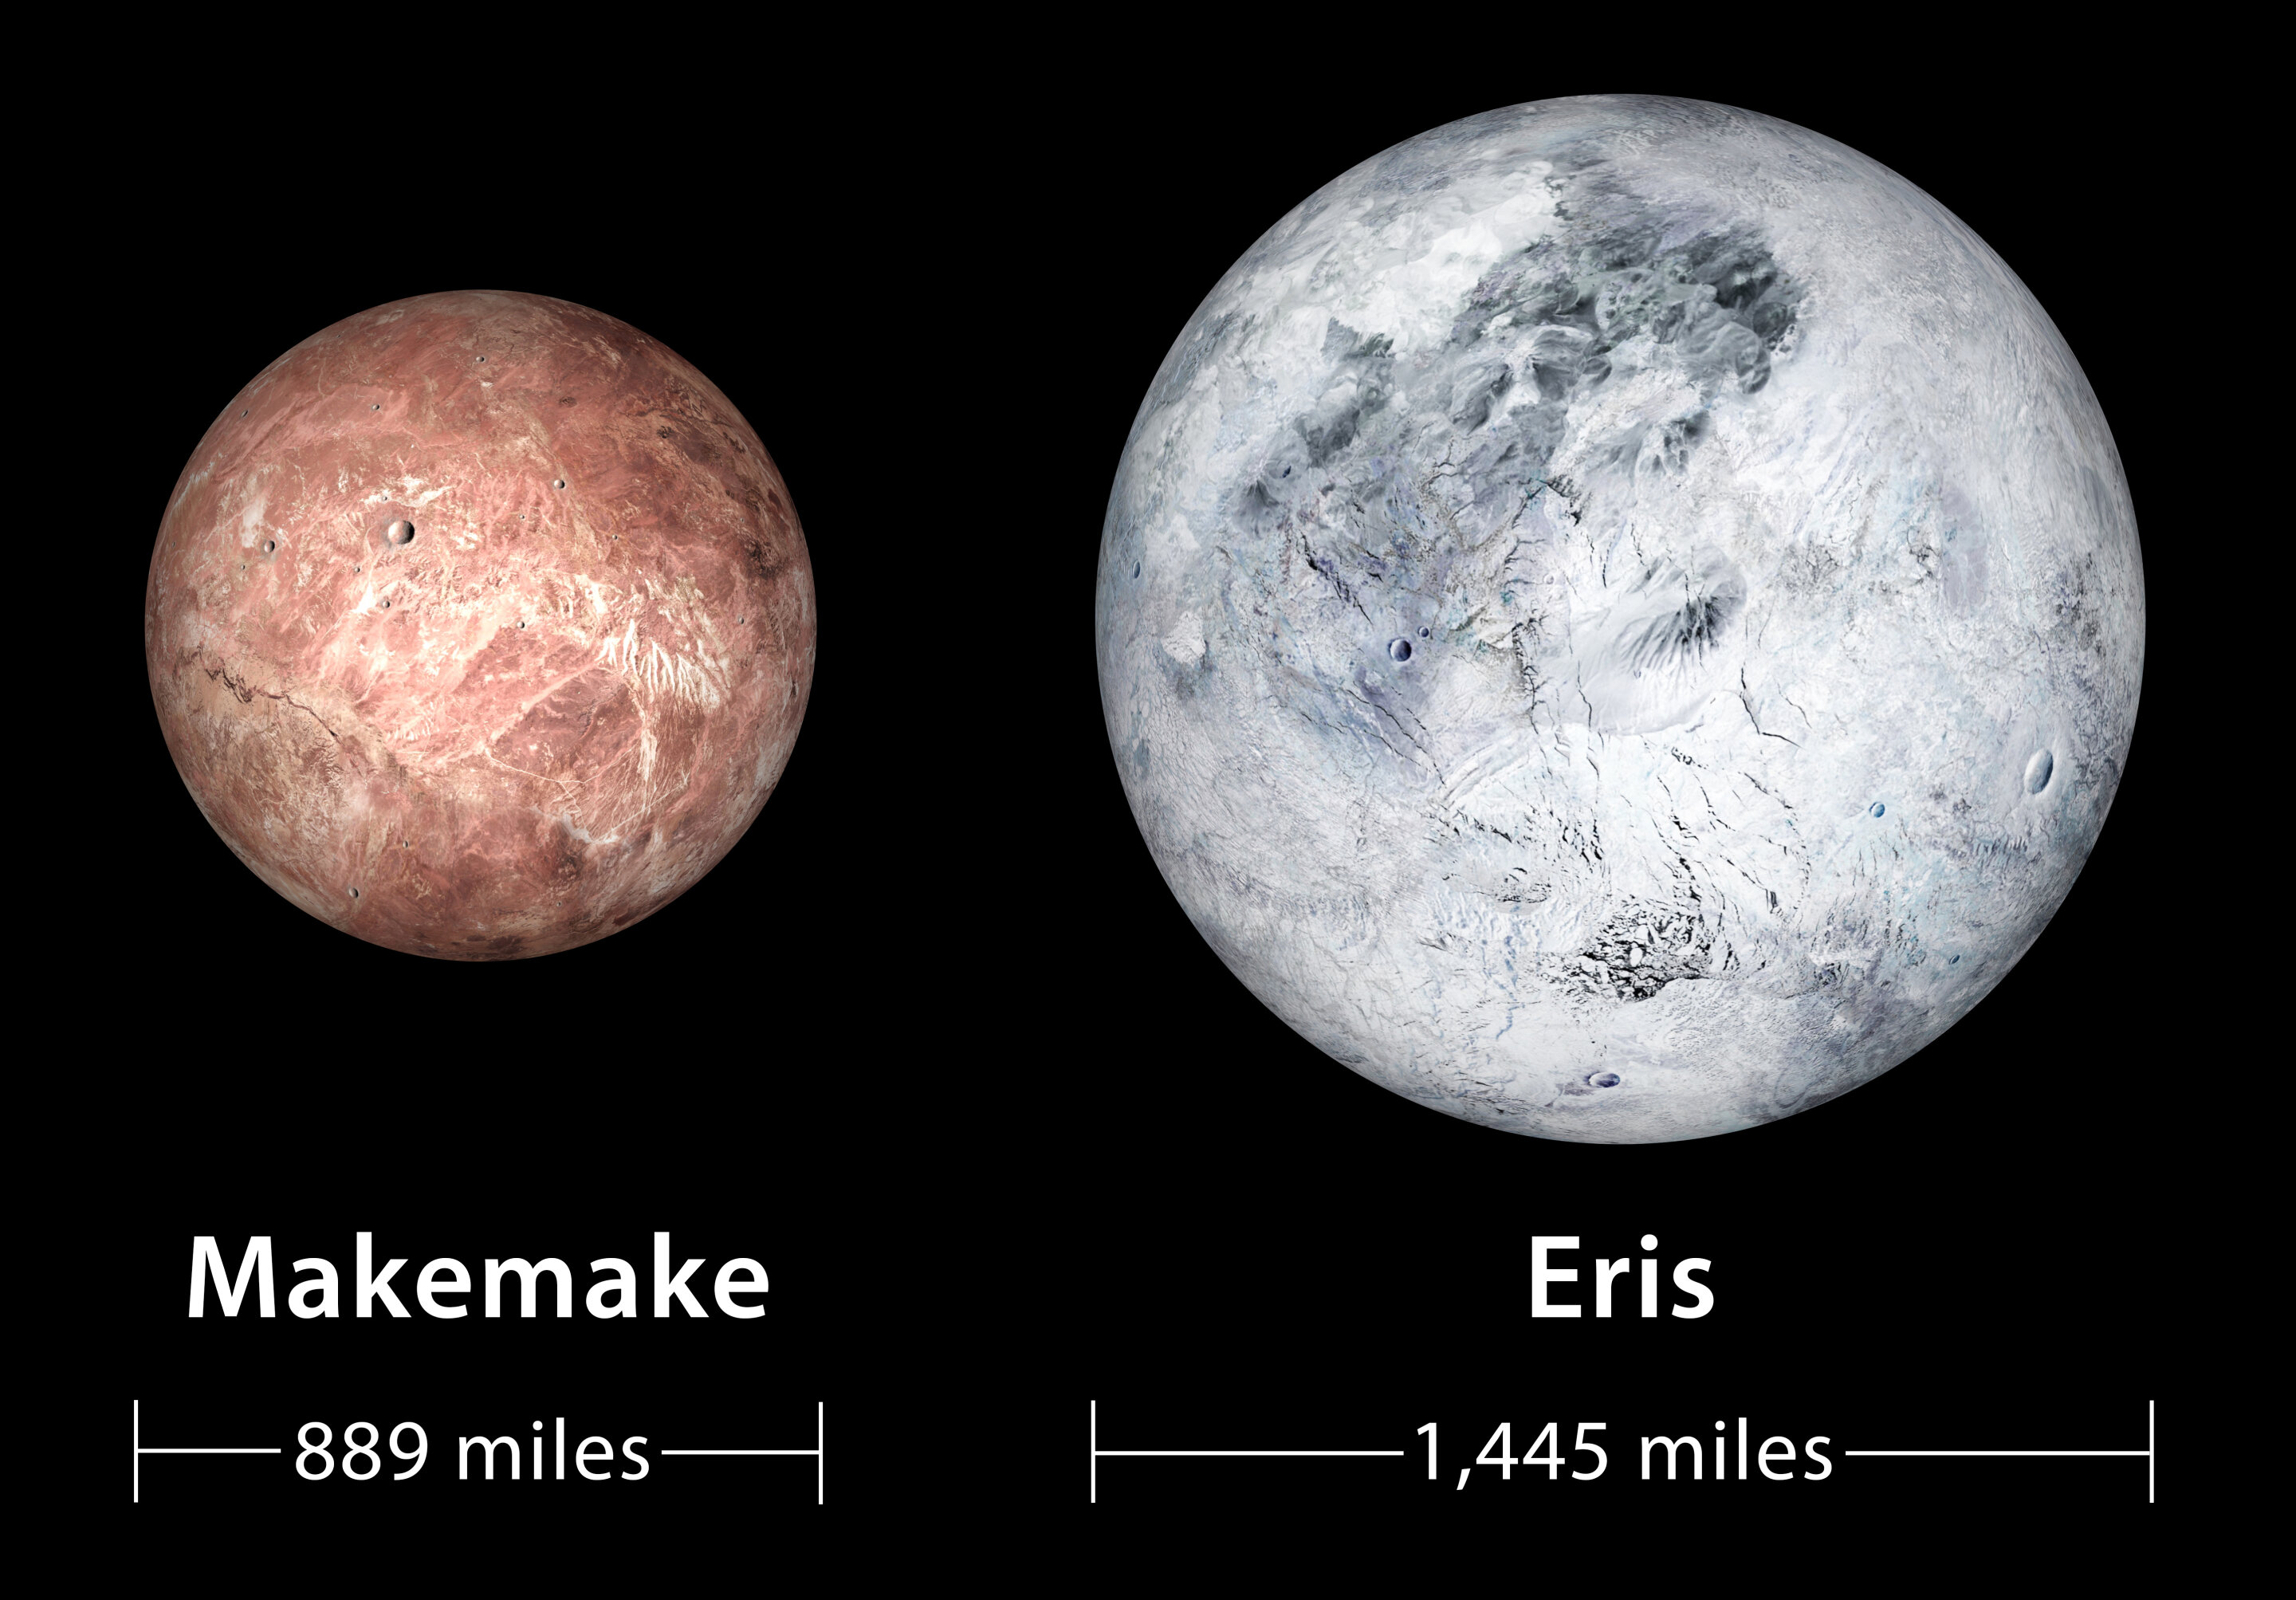 Команда исследователей обнаружила свидетельства гидротермальной или метаморфической активности на ледяных карликовых планетах Эрида и Макемаке, расположенных в Поясе Койпера